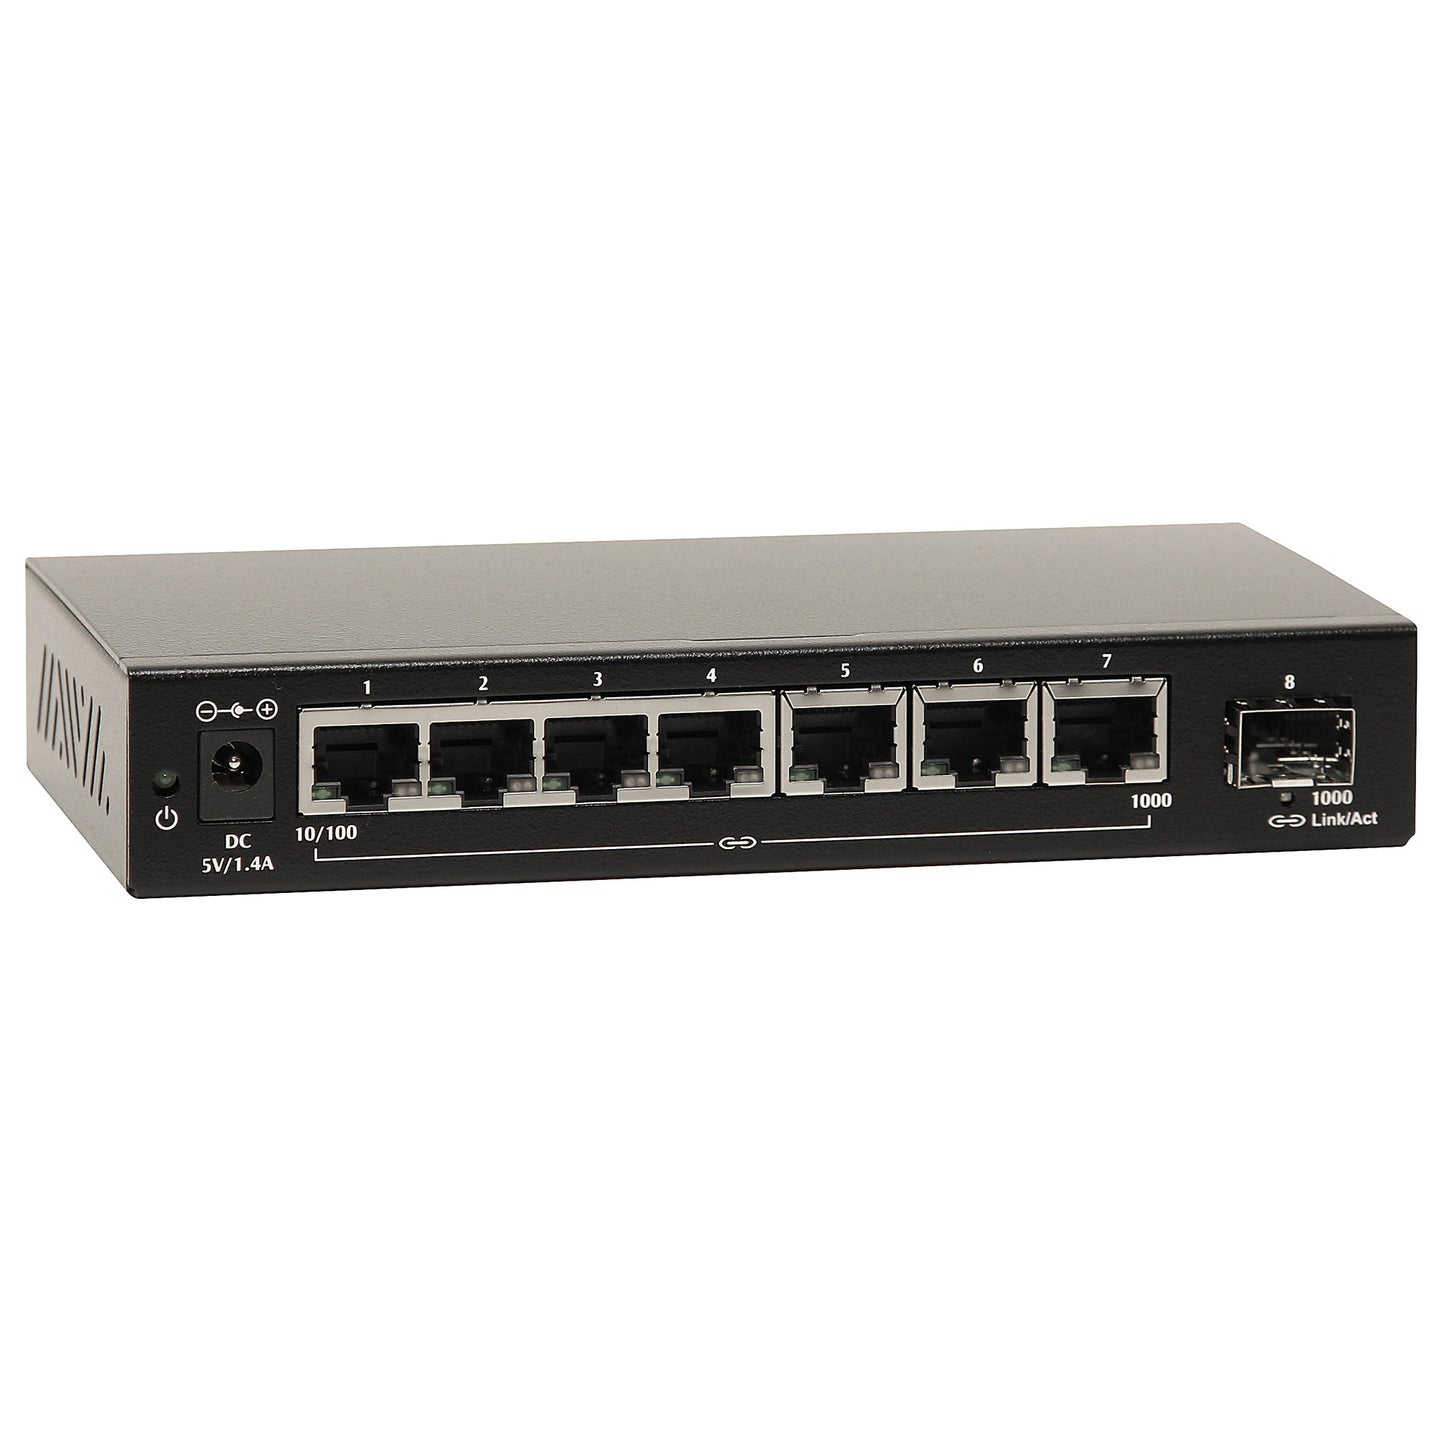 EX16917-V - Gigabit Ethernet Switch - 7-port 10/100/1000BASE-T + 1000SFP Unmanaged